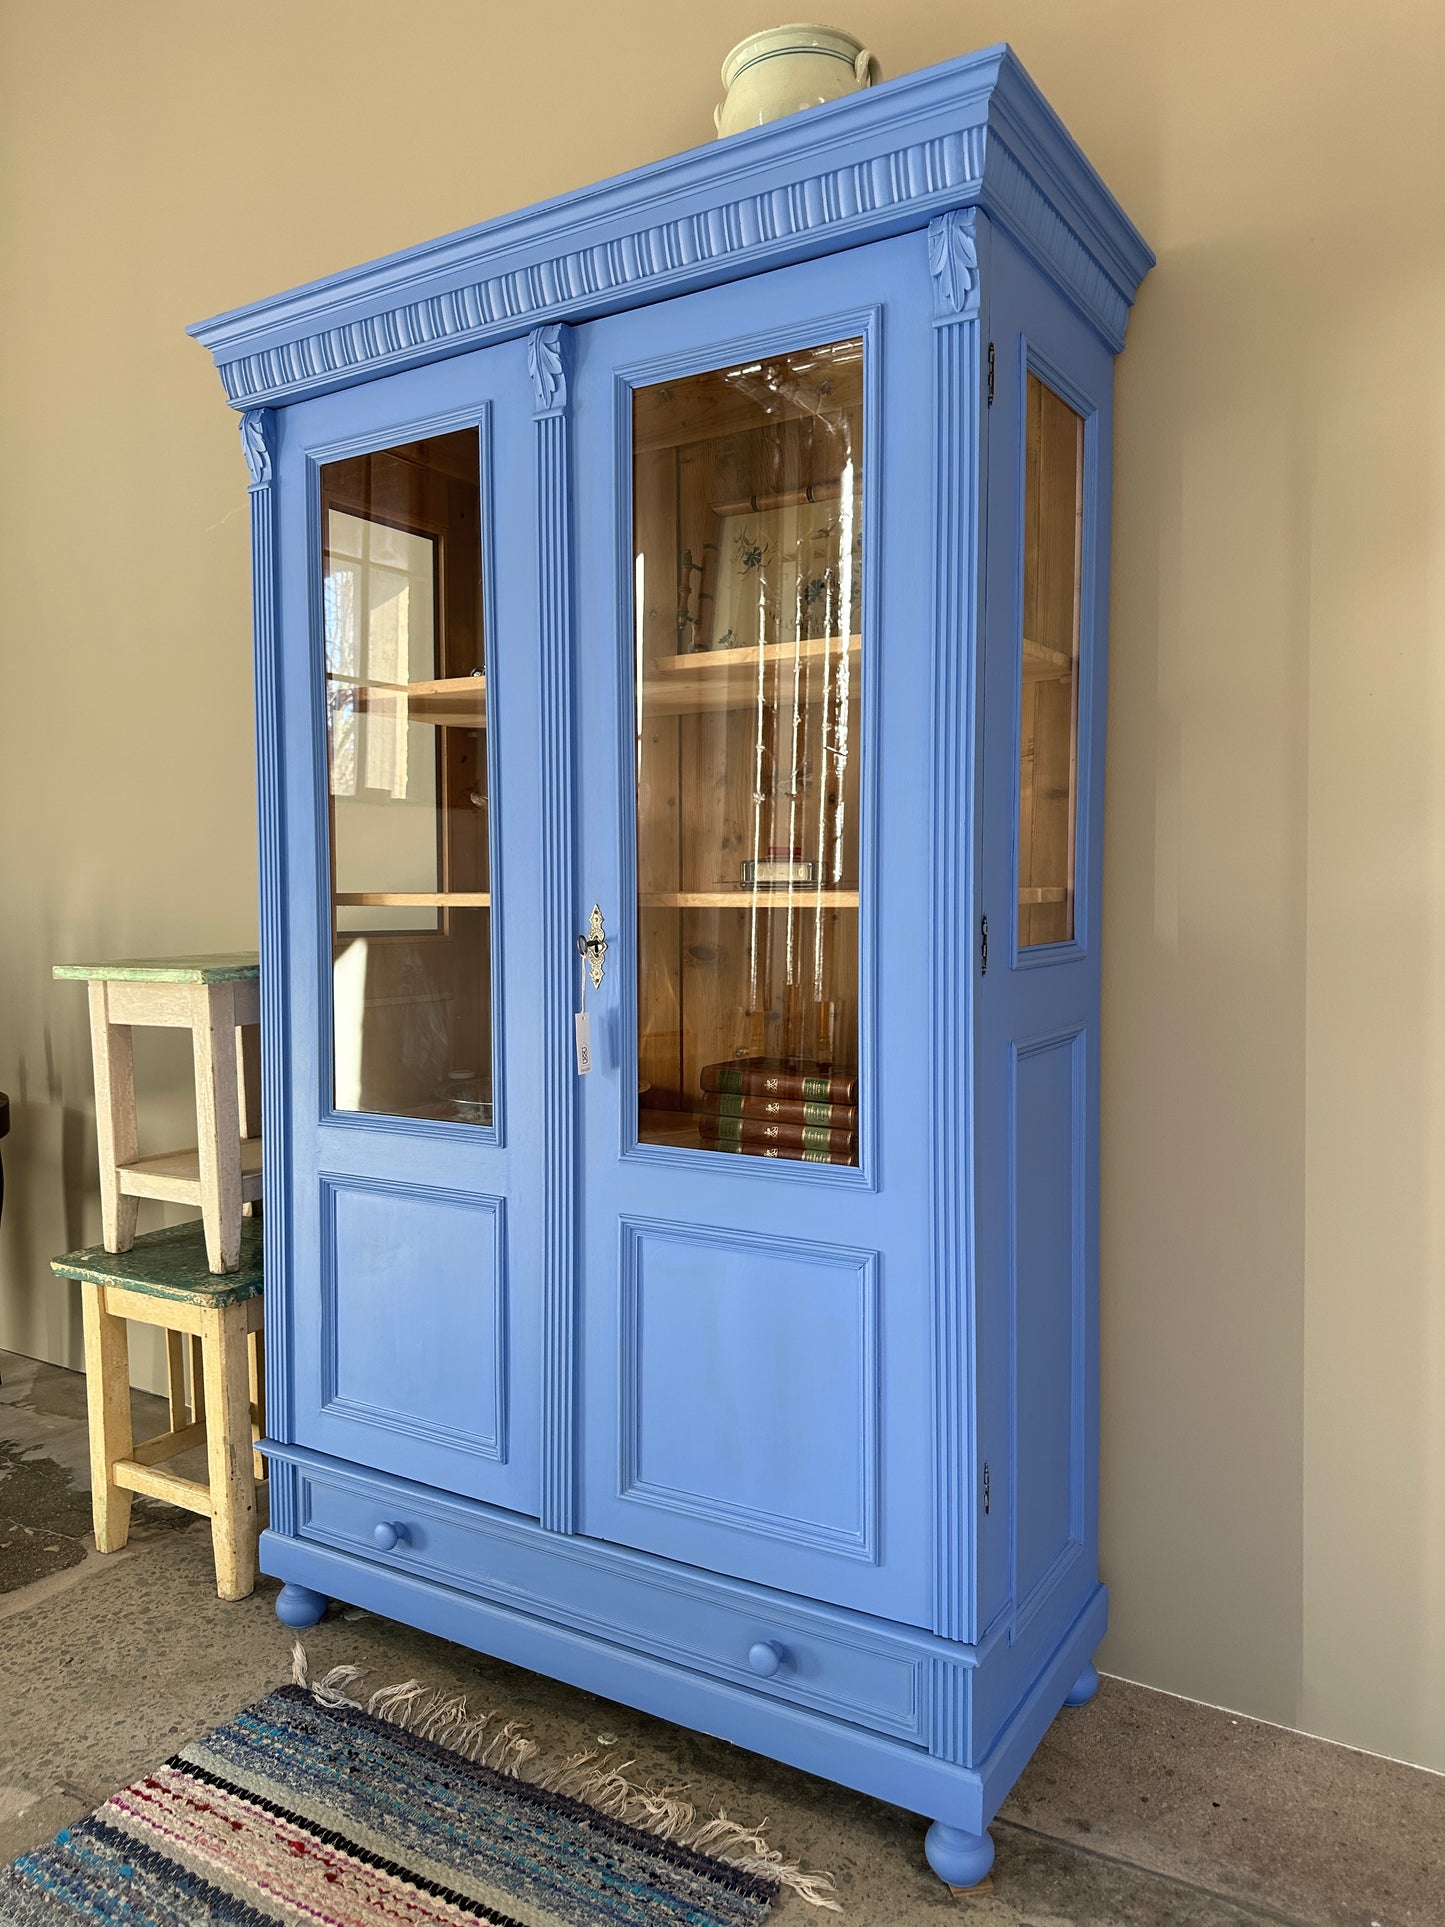 Bild visar blått vitrinskåp med två dörrar. Bild tagen från sidan